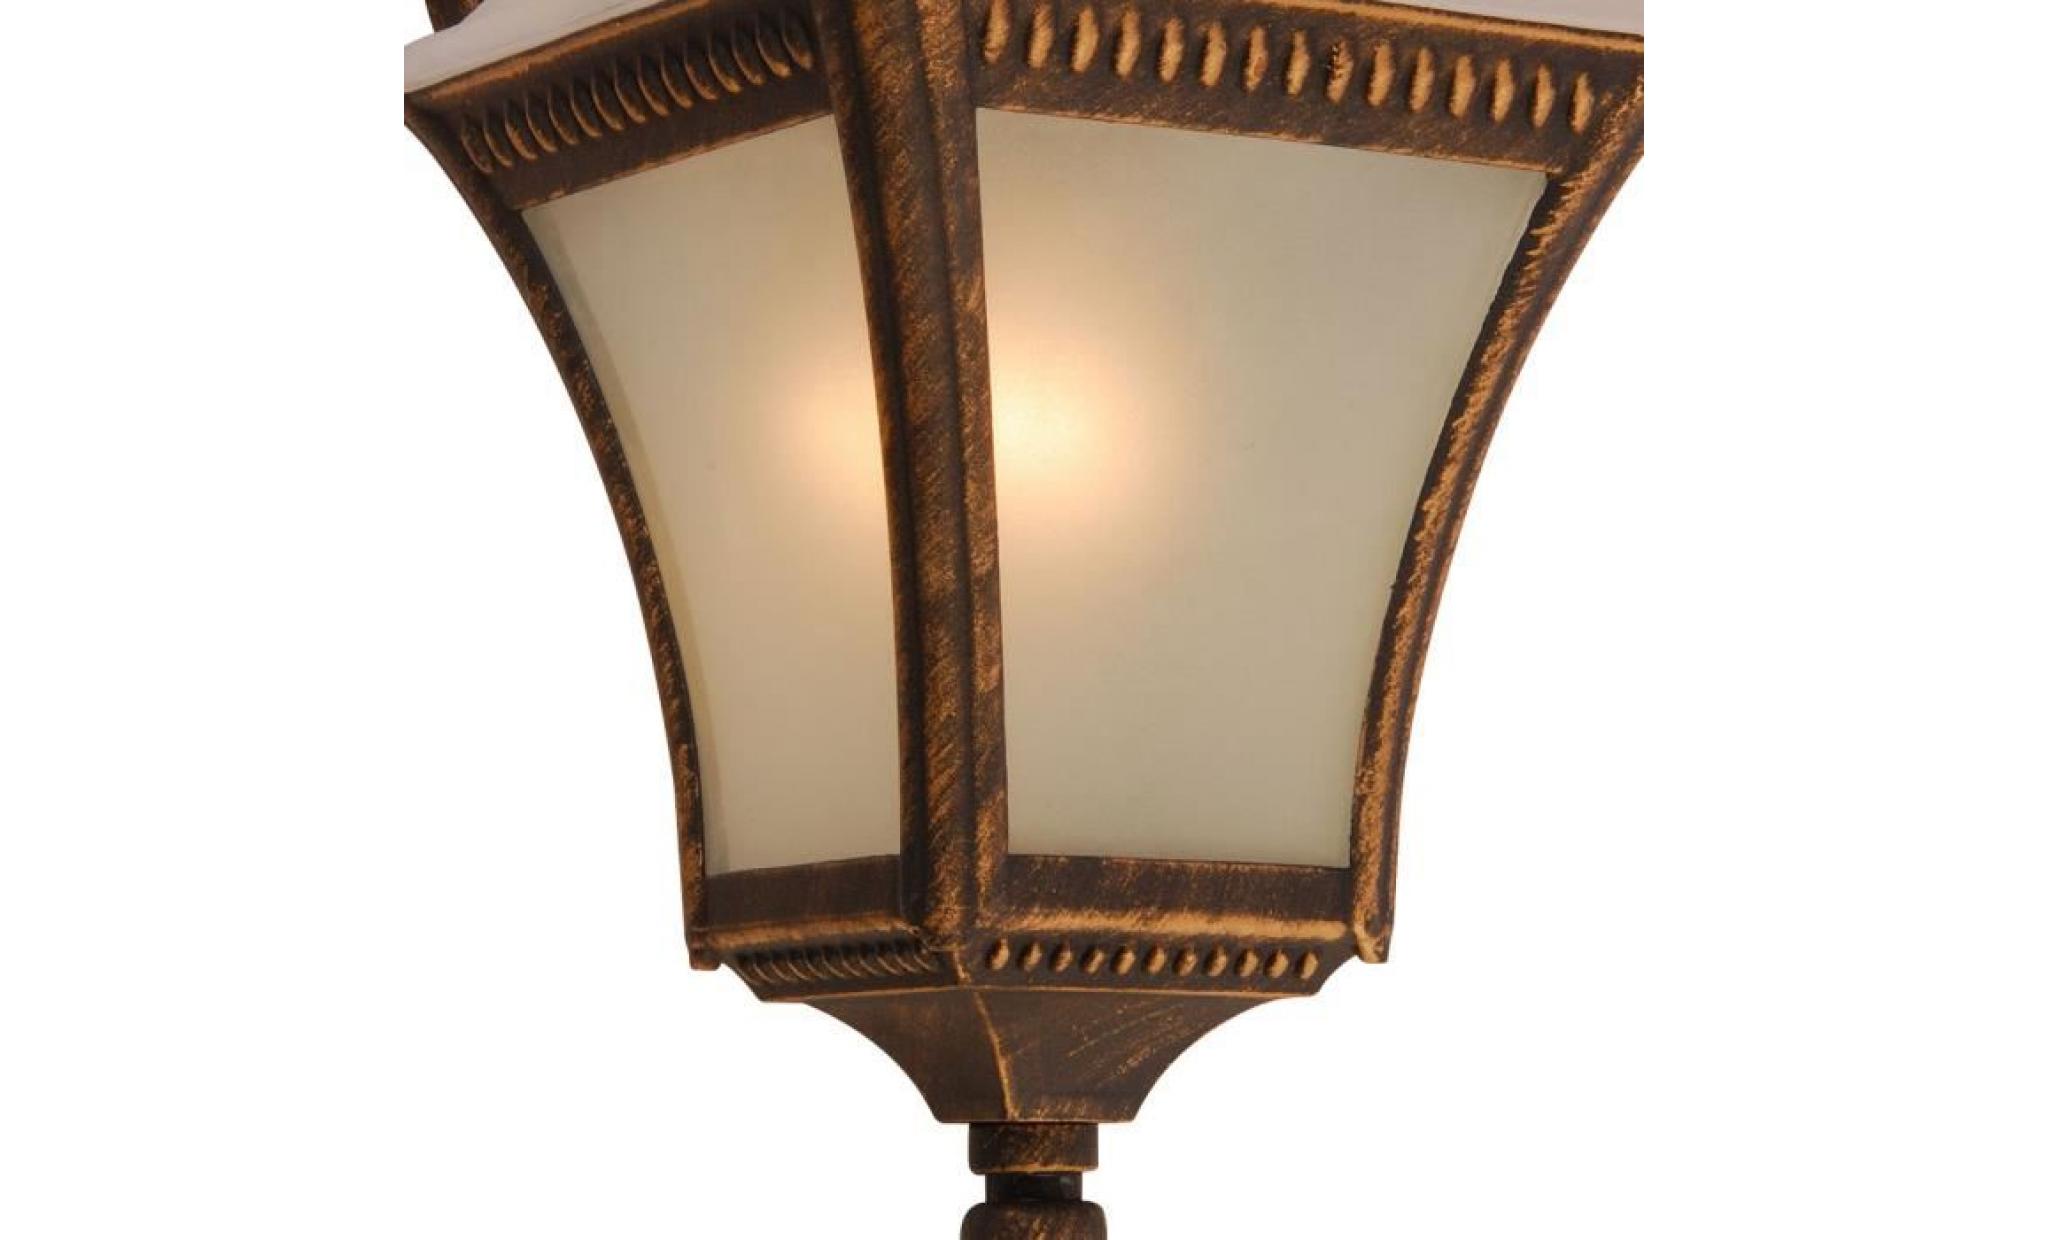 terrain lumière mur extérieur spots lampe lanterne de verre patinée en série incl. lampes led rgb pas cher